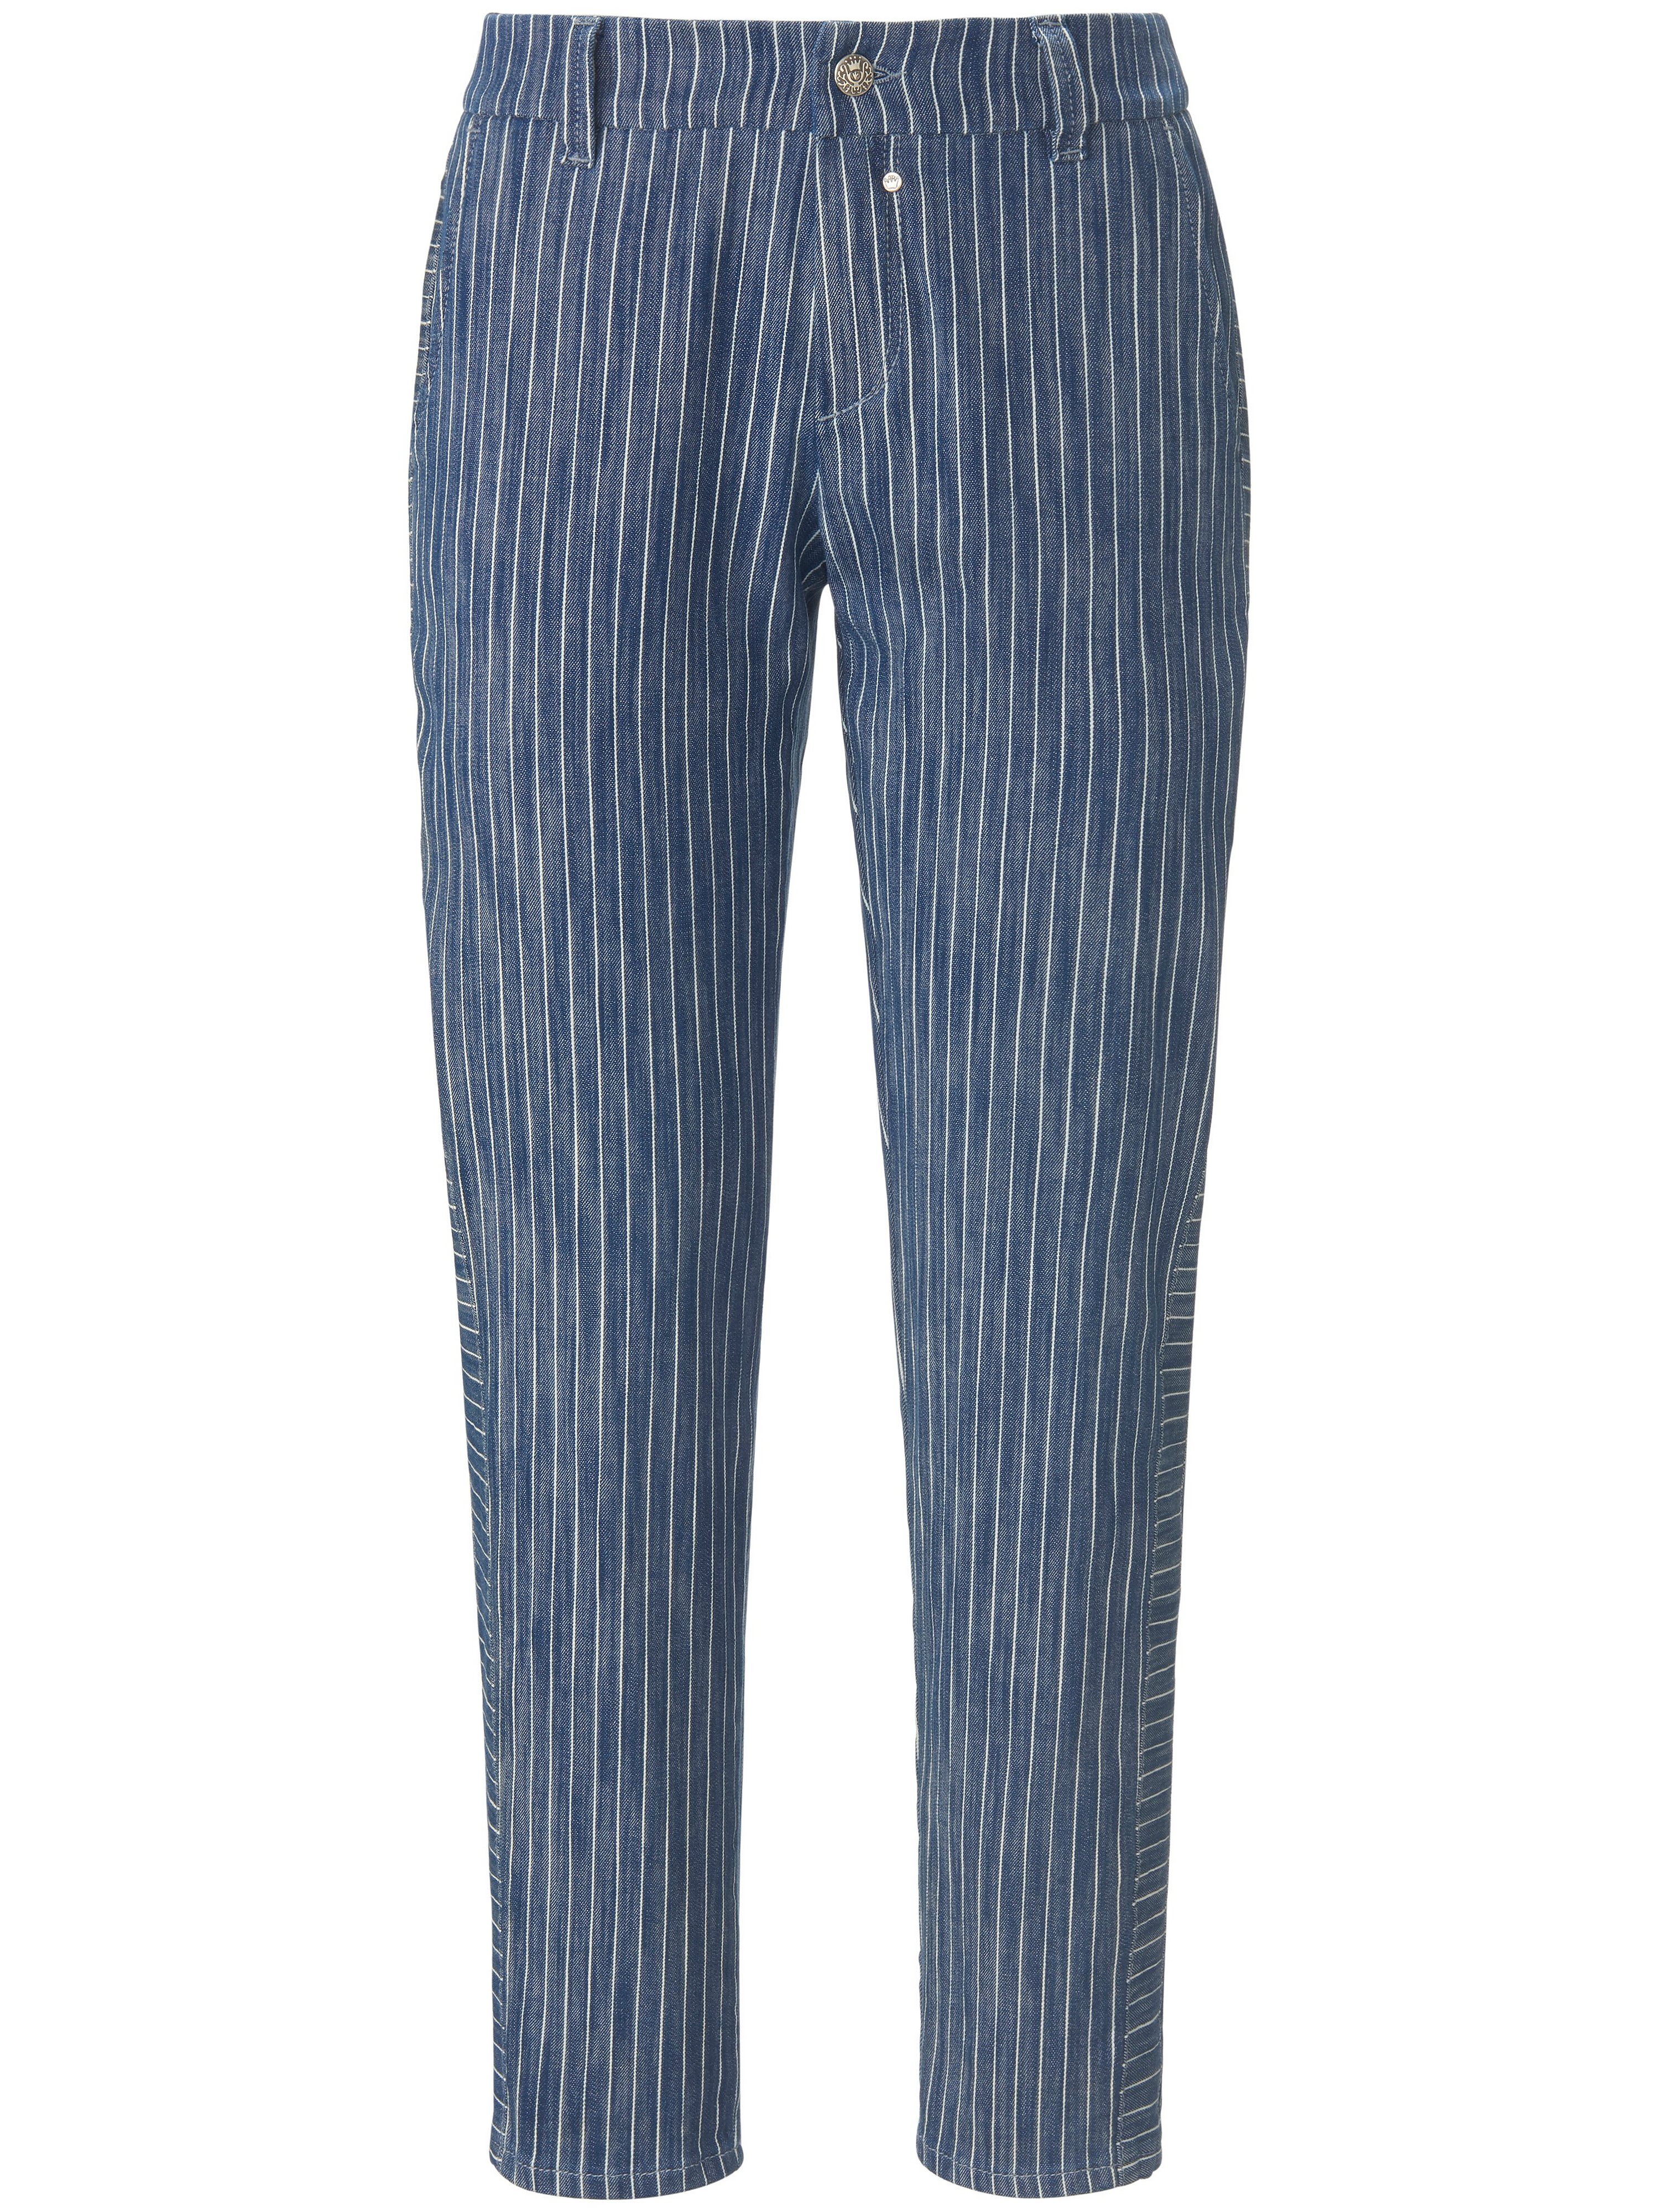 Le pantalon modèle Garry  Glücksmoment bleu